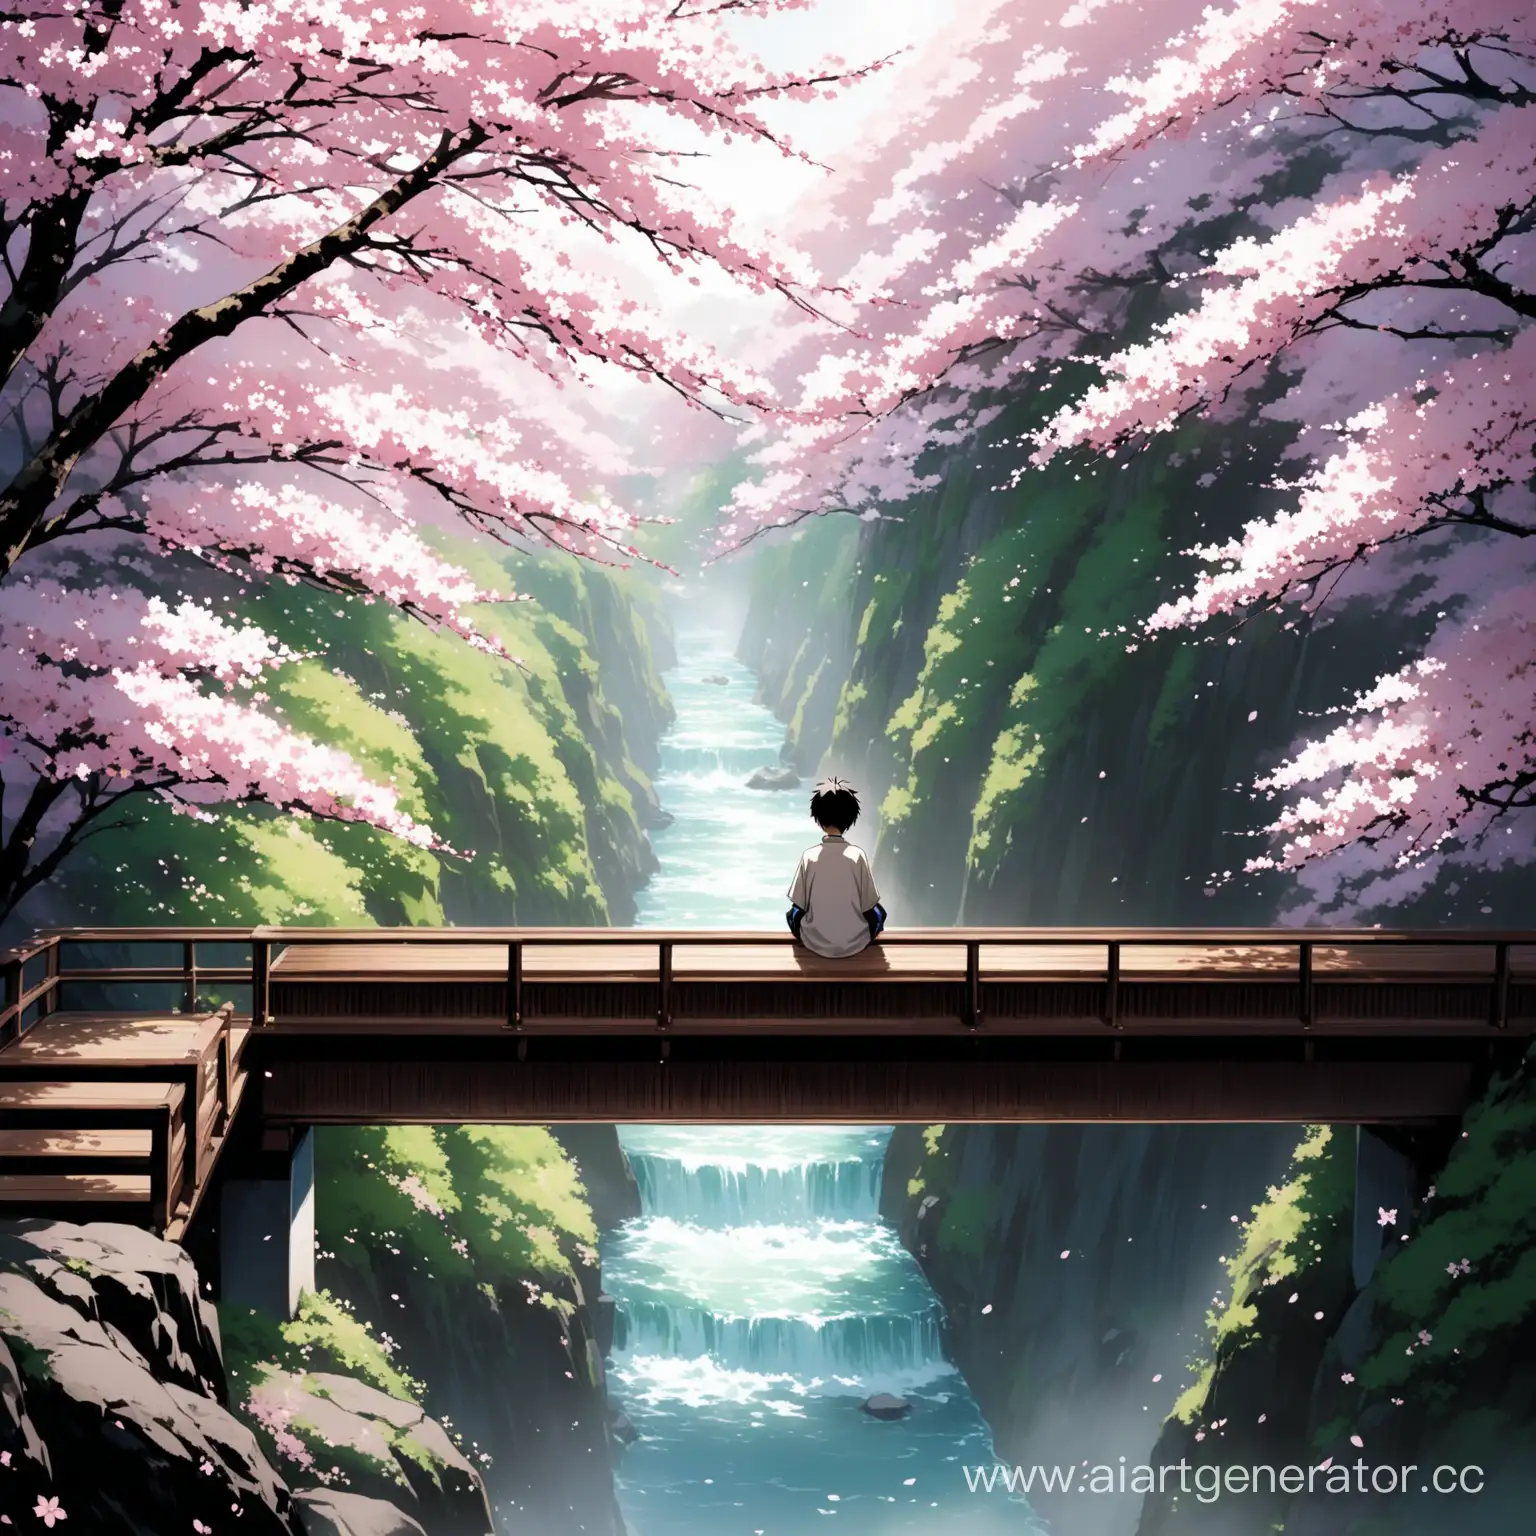 мальчик , сидит на мосту в японии и глядит в пропость а рядом пакуры с сакурой.
и никнейм внизу белым chocopaika0736
